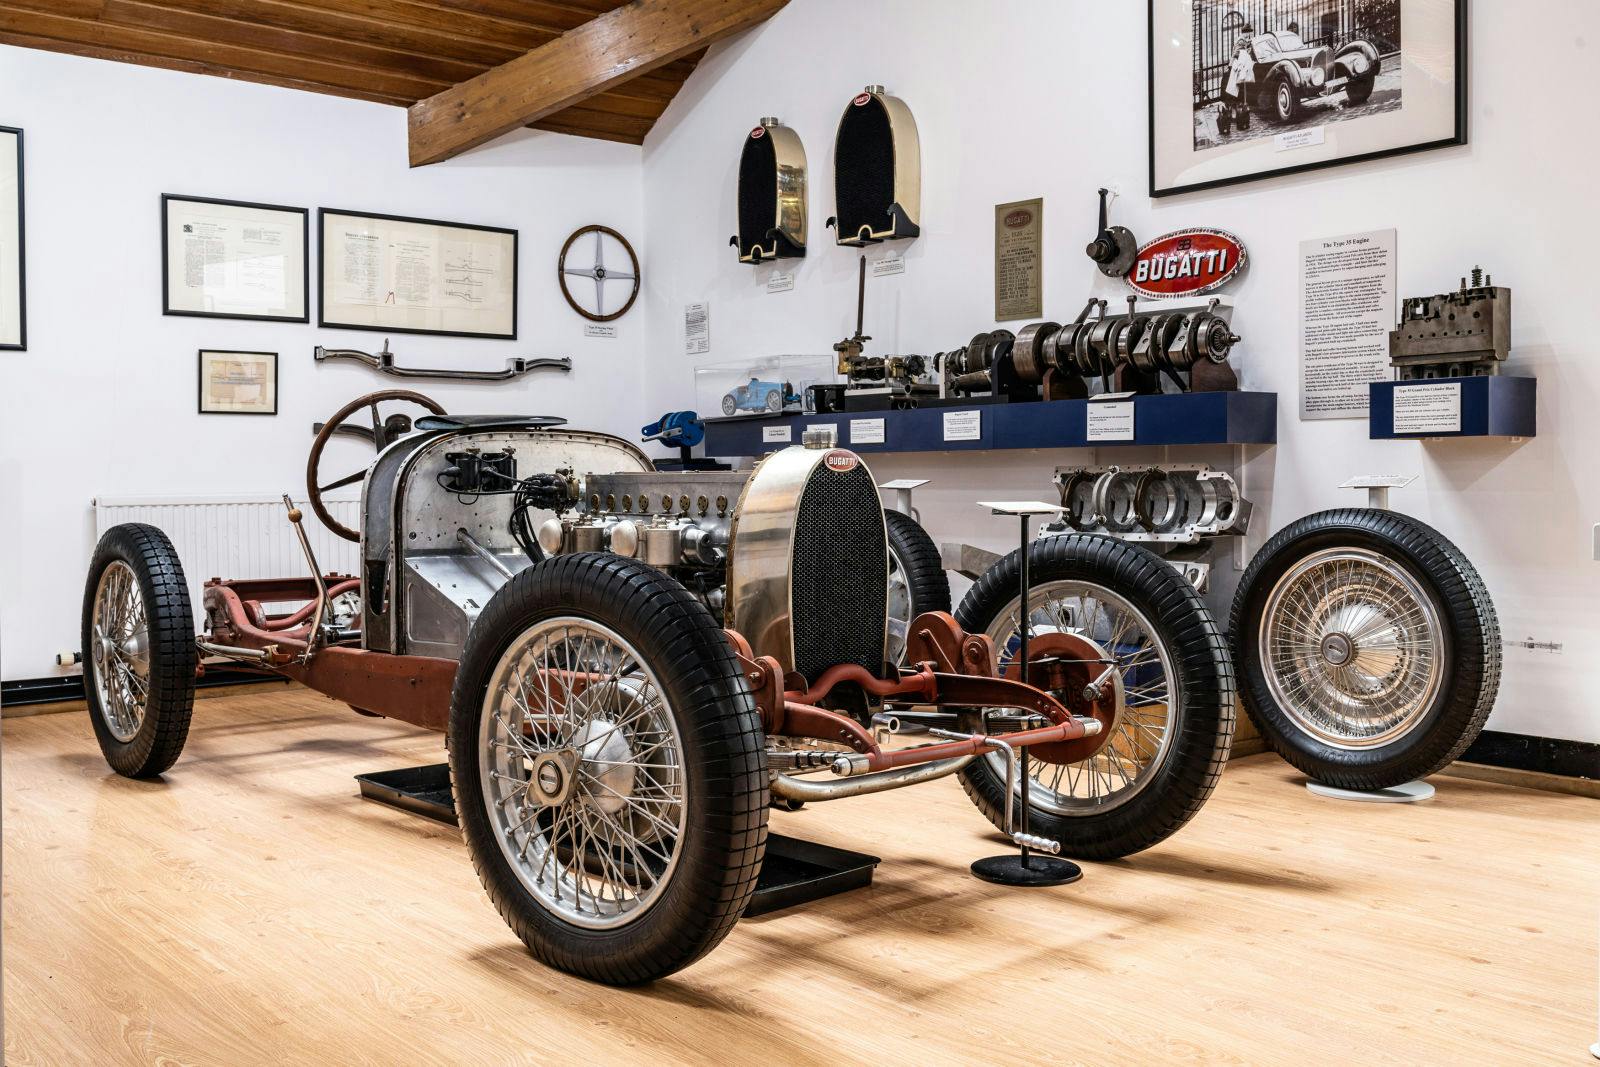 Der Bugatti Owners' Club entstand aus der gemeinsamen Leidenschaft für die Bugatti-Modelle, das Design, die Technik und das Fahrerlebnis.